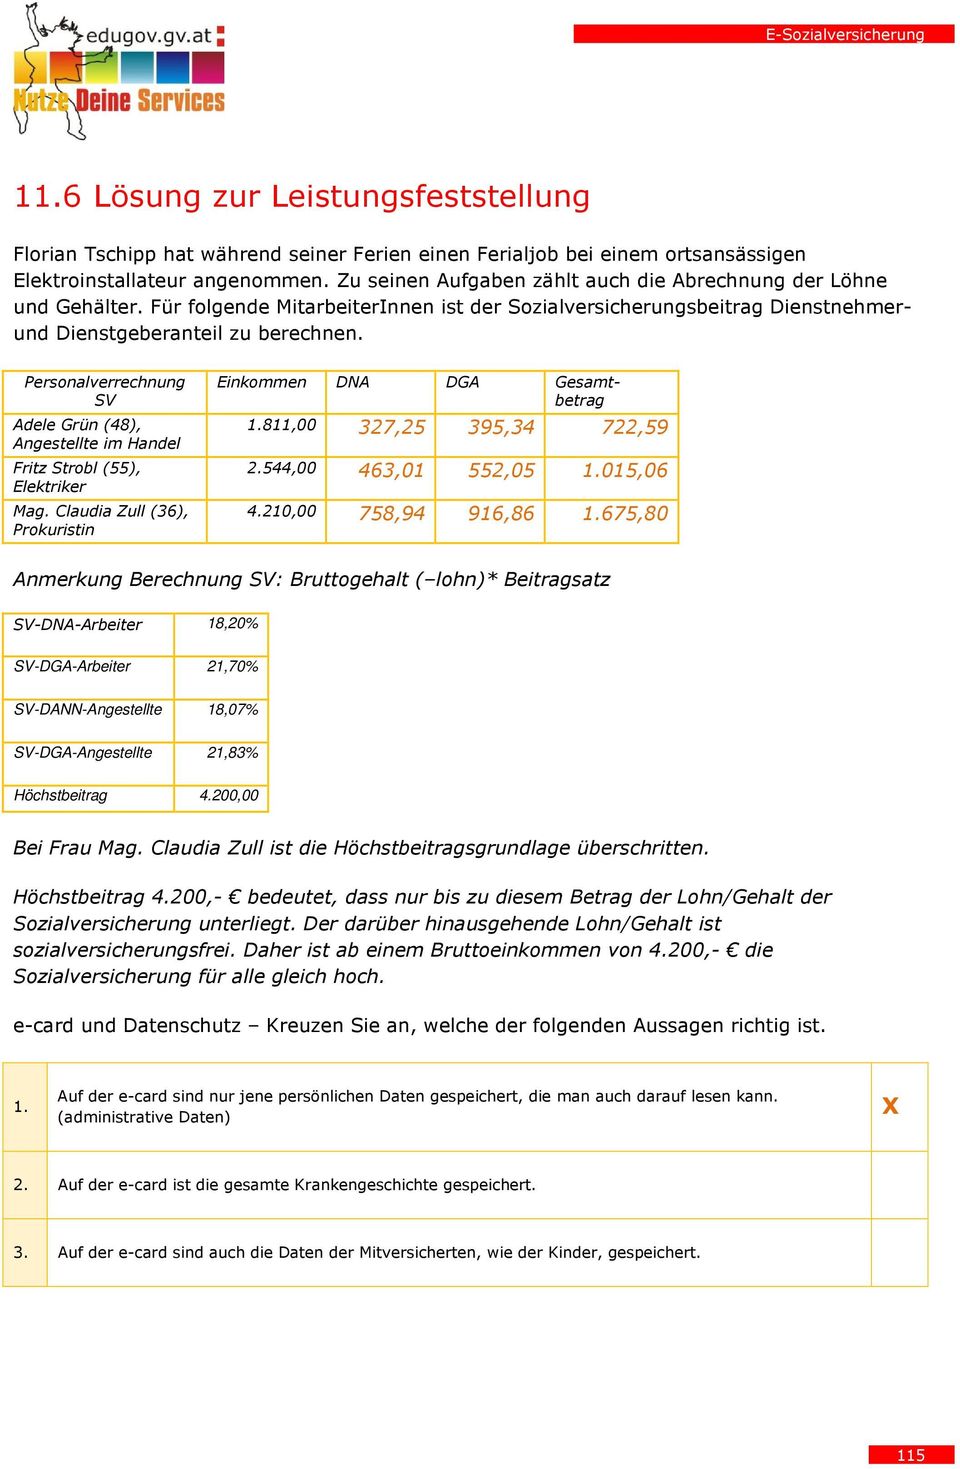 Personalverrechnung SV Adele Grün (48), Angestellte im Handel Fritz Strobl (55), Elektriker Mag. Claudia Zull (36), Prokuristin Einkommen DNA DGA Gesamtbetrag 1.811,00 327,25 395,34 722,59 2.